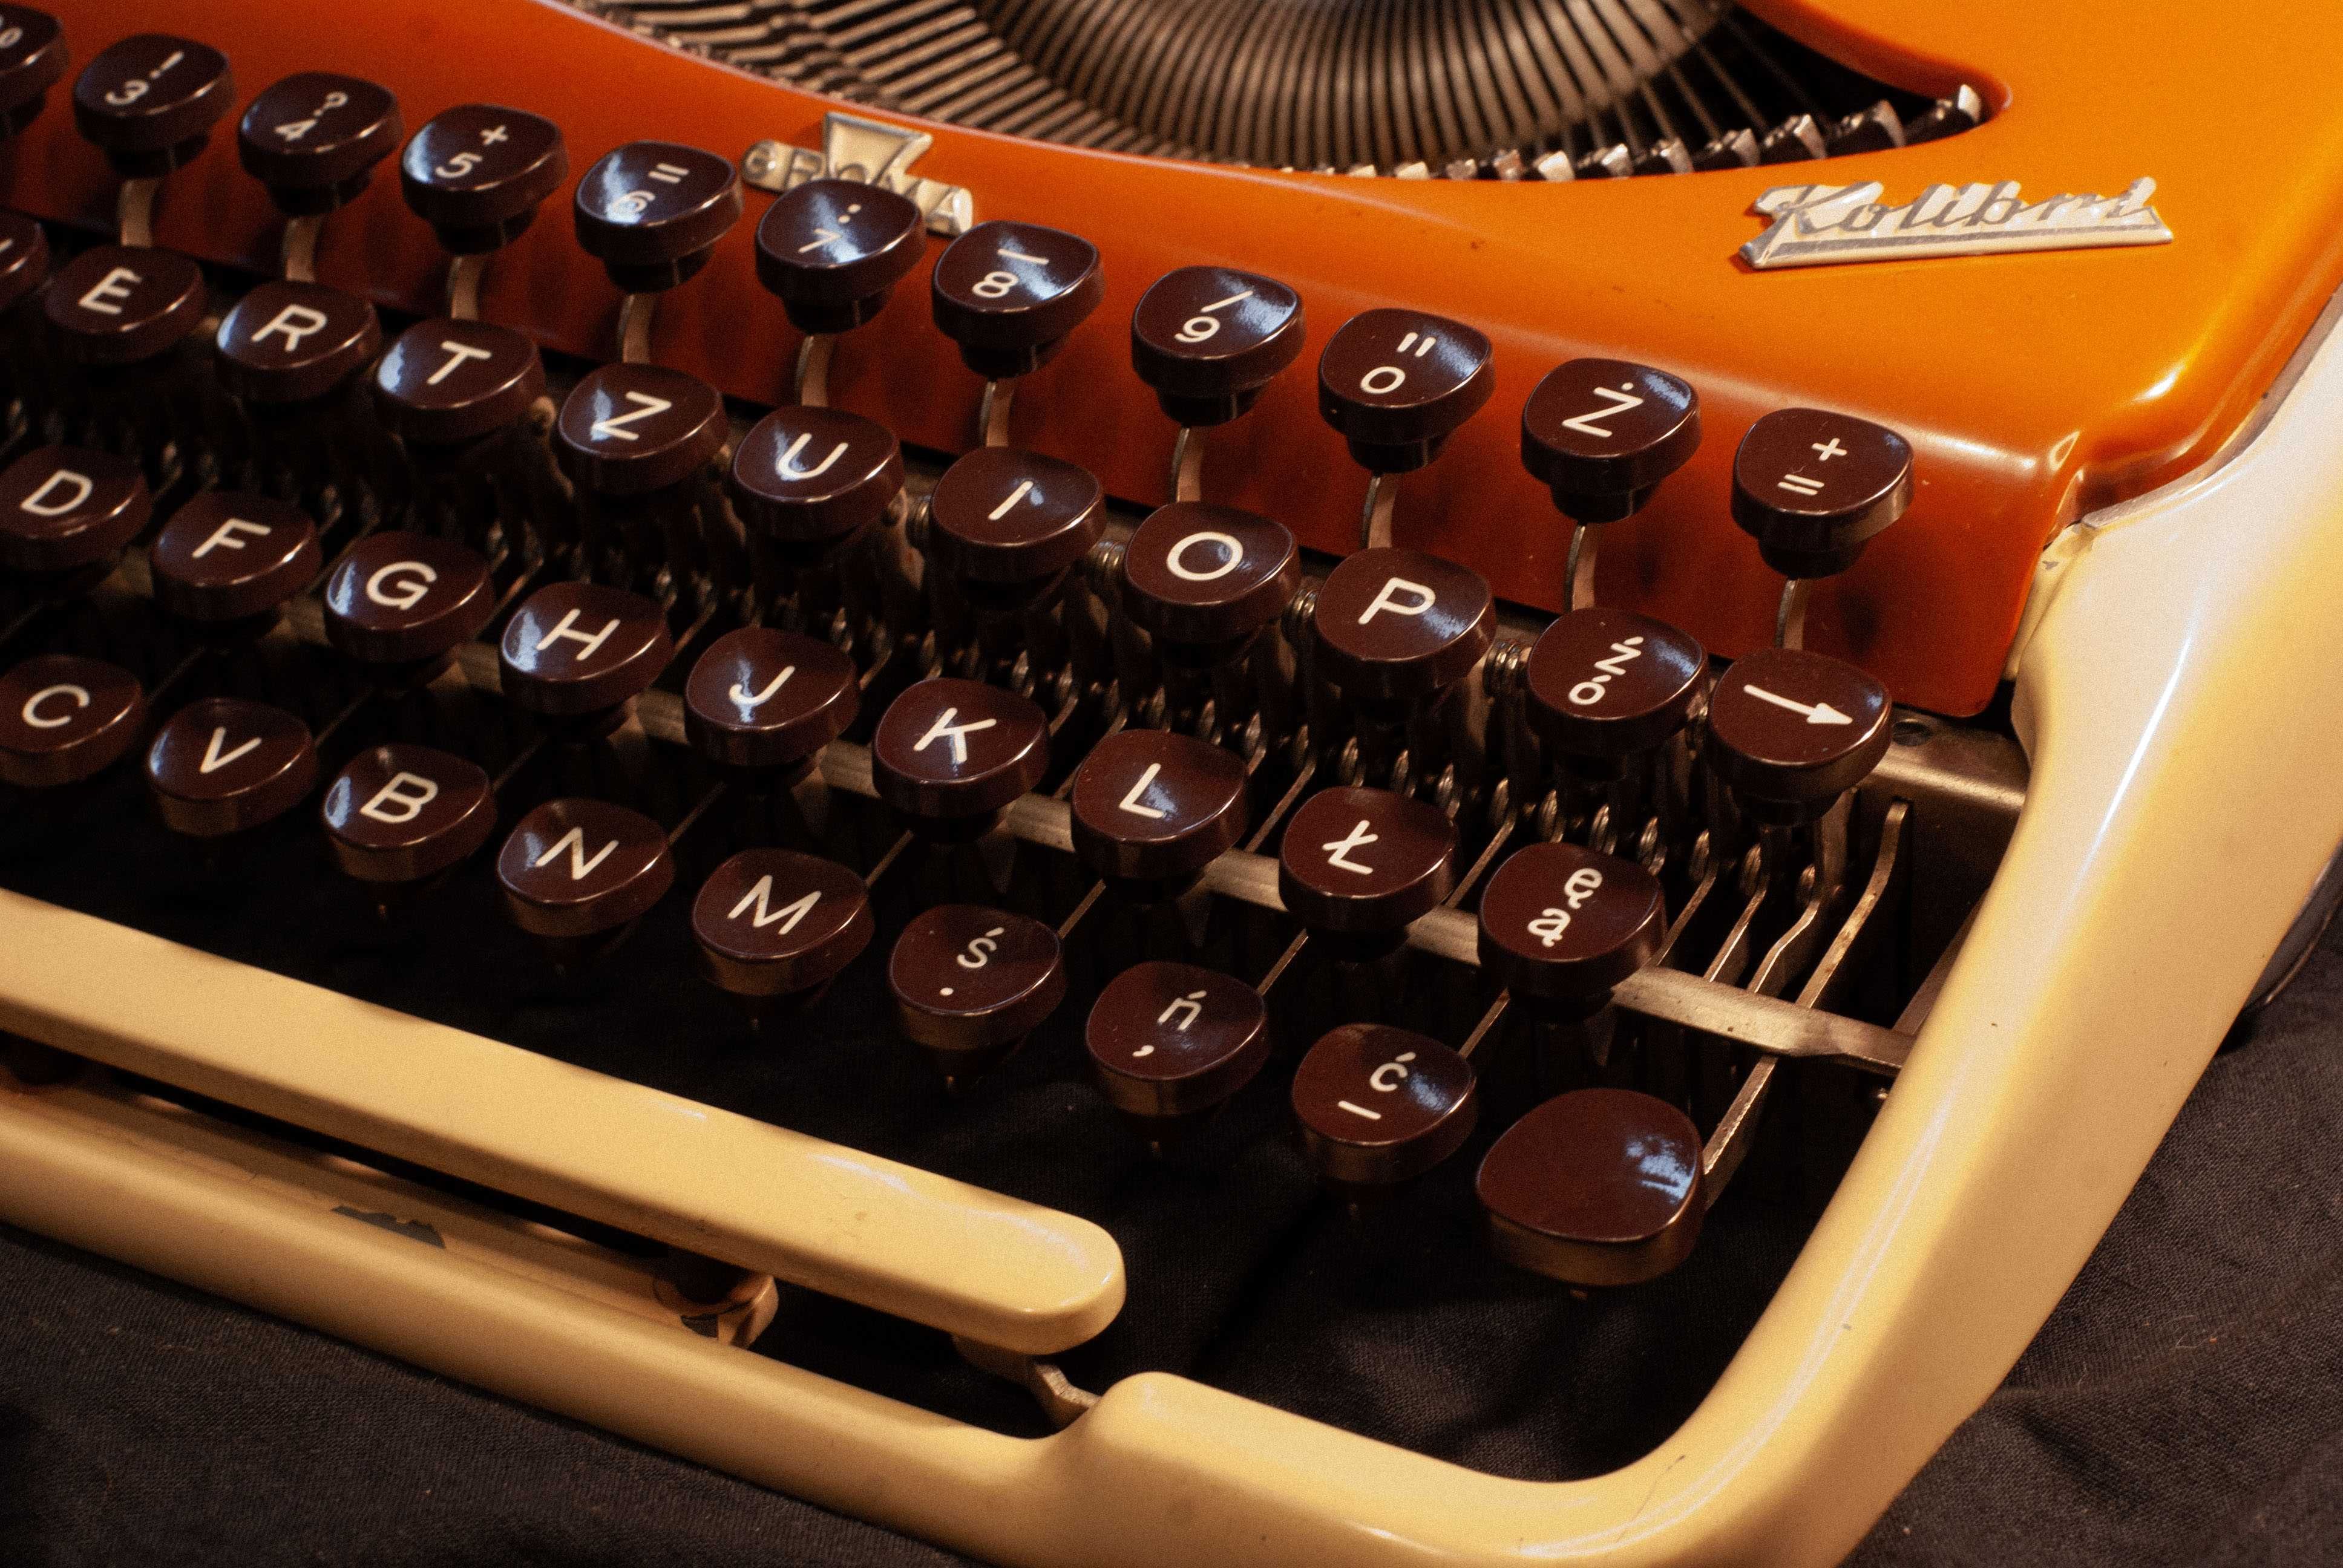 Groma Kolibri maszyna do pisania - Odrestaurowana